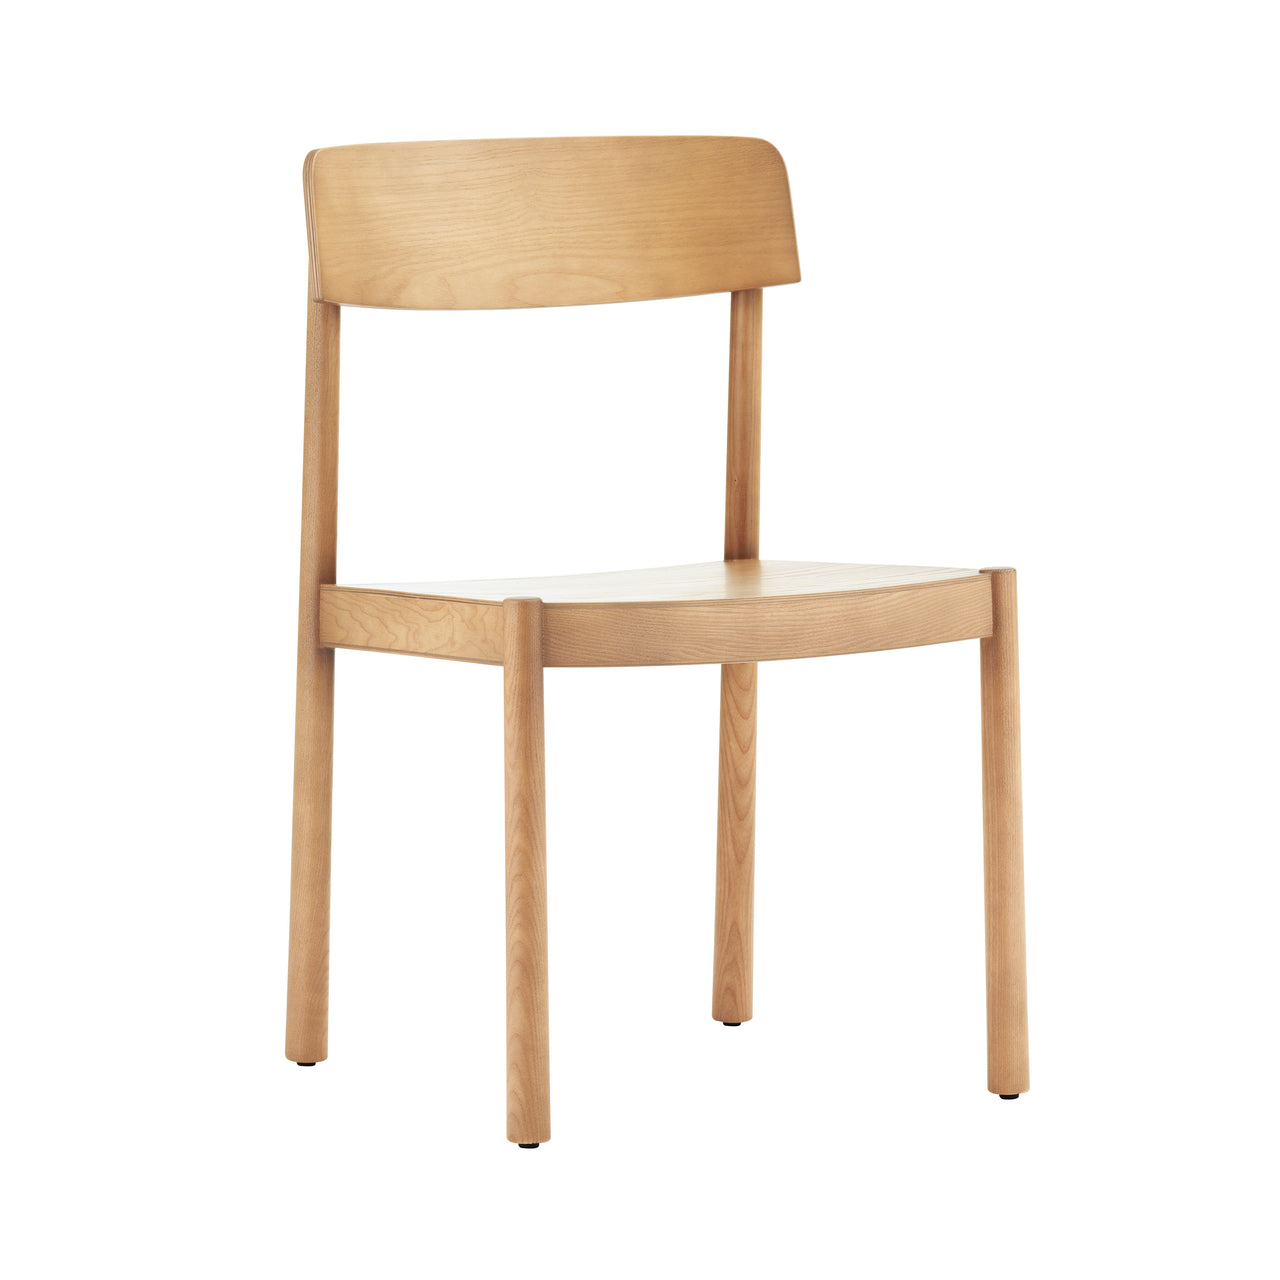 Timb Chair: Tan